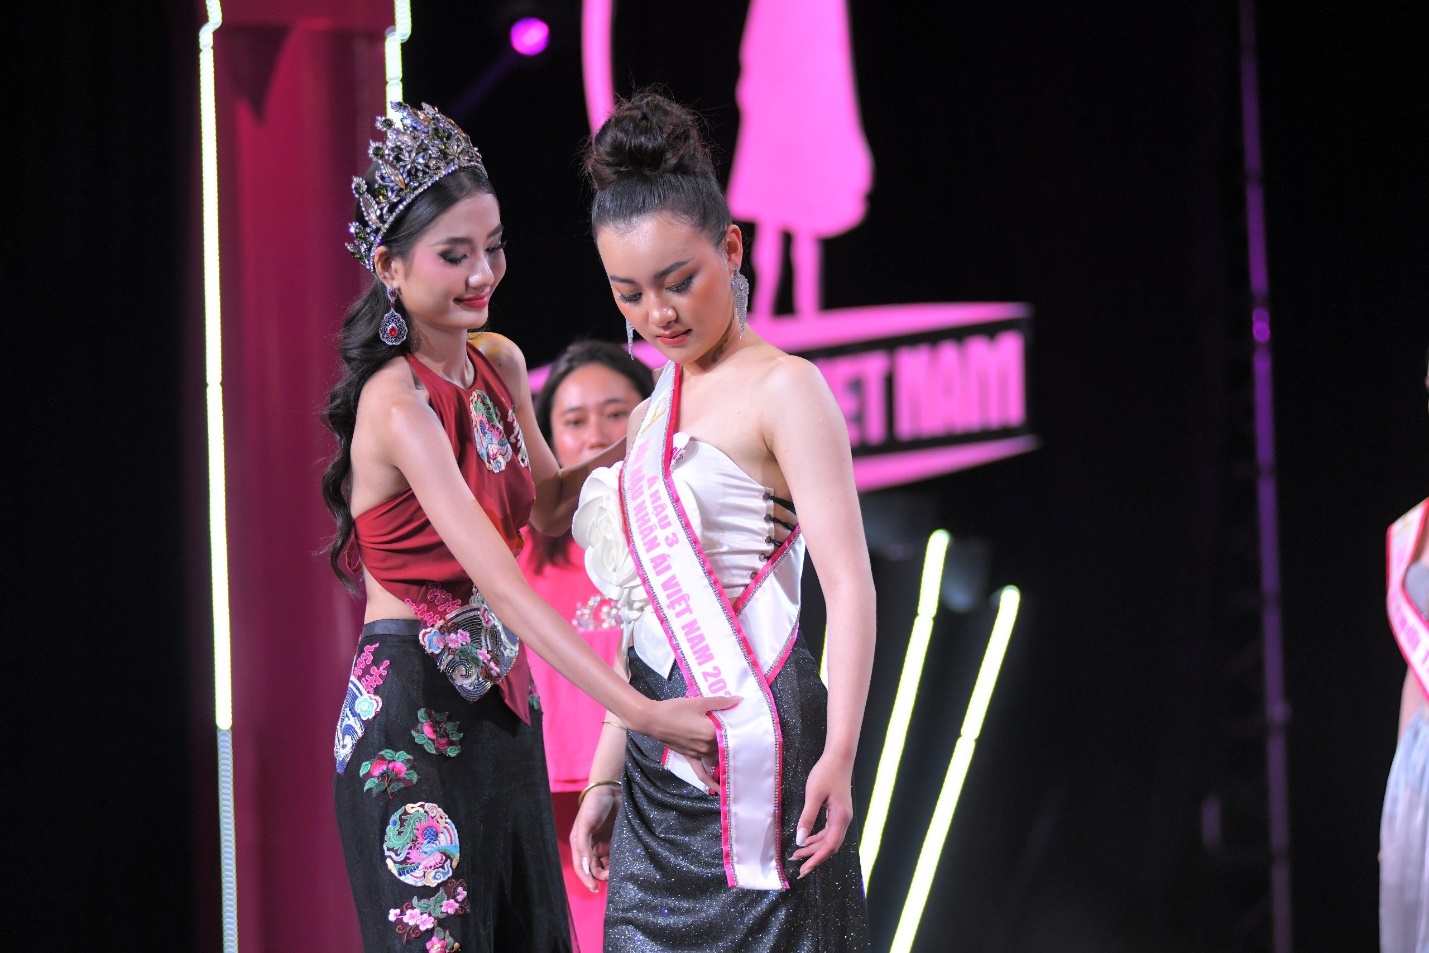 Hoa hậu Nguyễn Thanh Hà nói về tranh cãi khi chấm thi nhan sắc ở tuổi 19 - 1